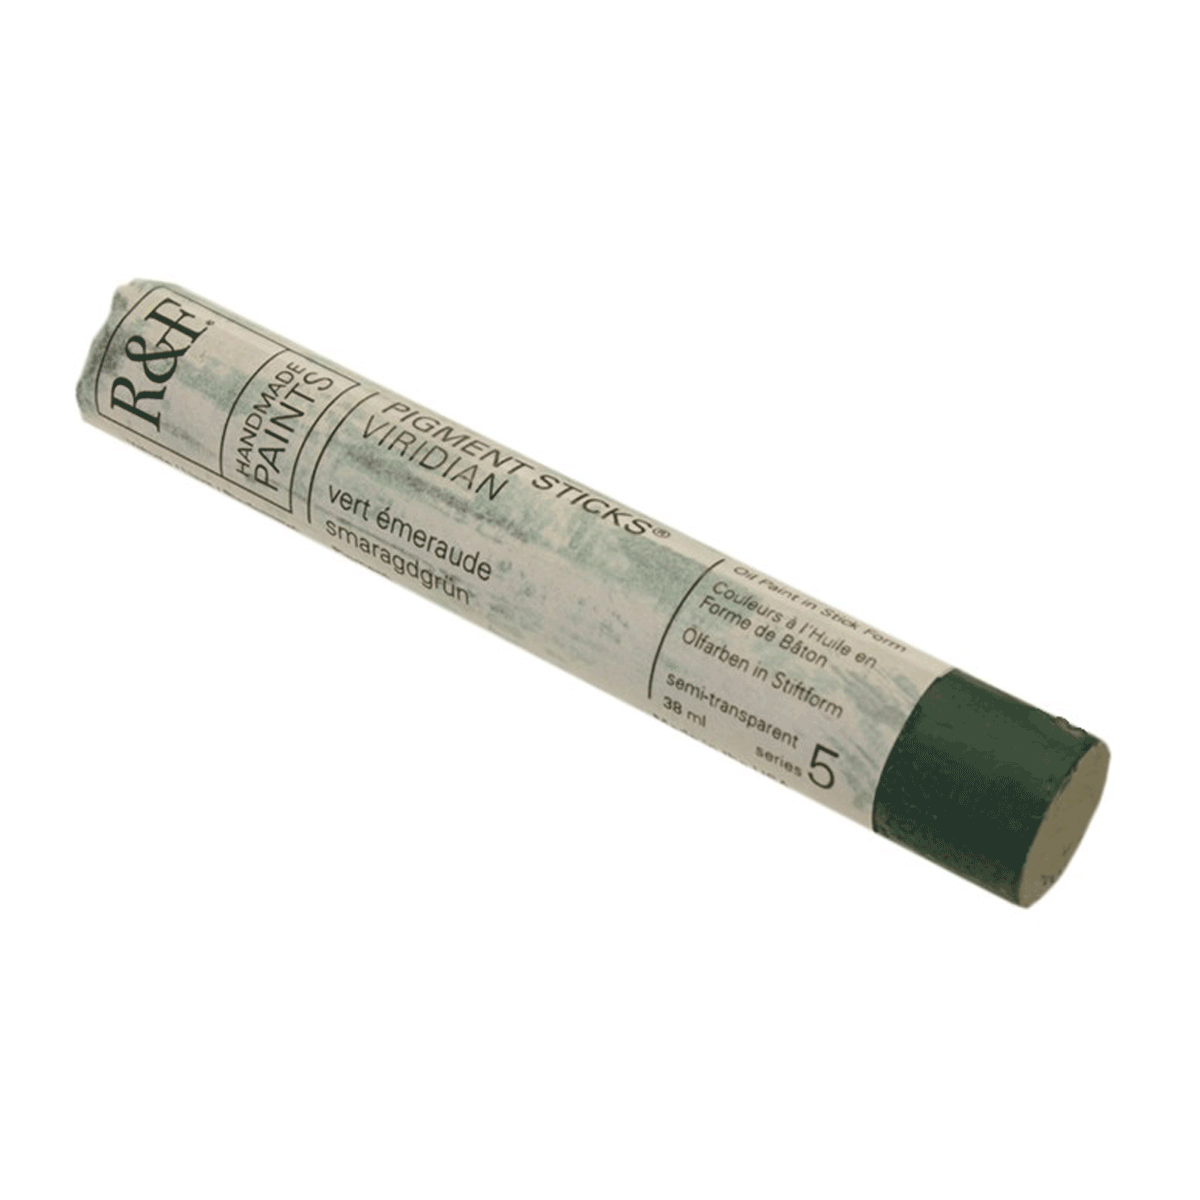 R&F Oil Pigment Stick, Viridian 38ml